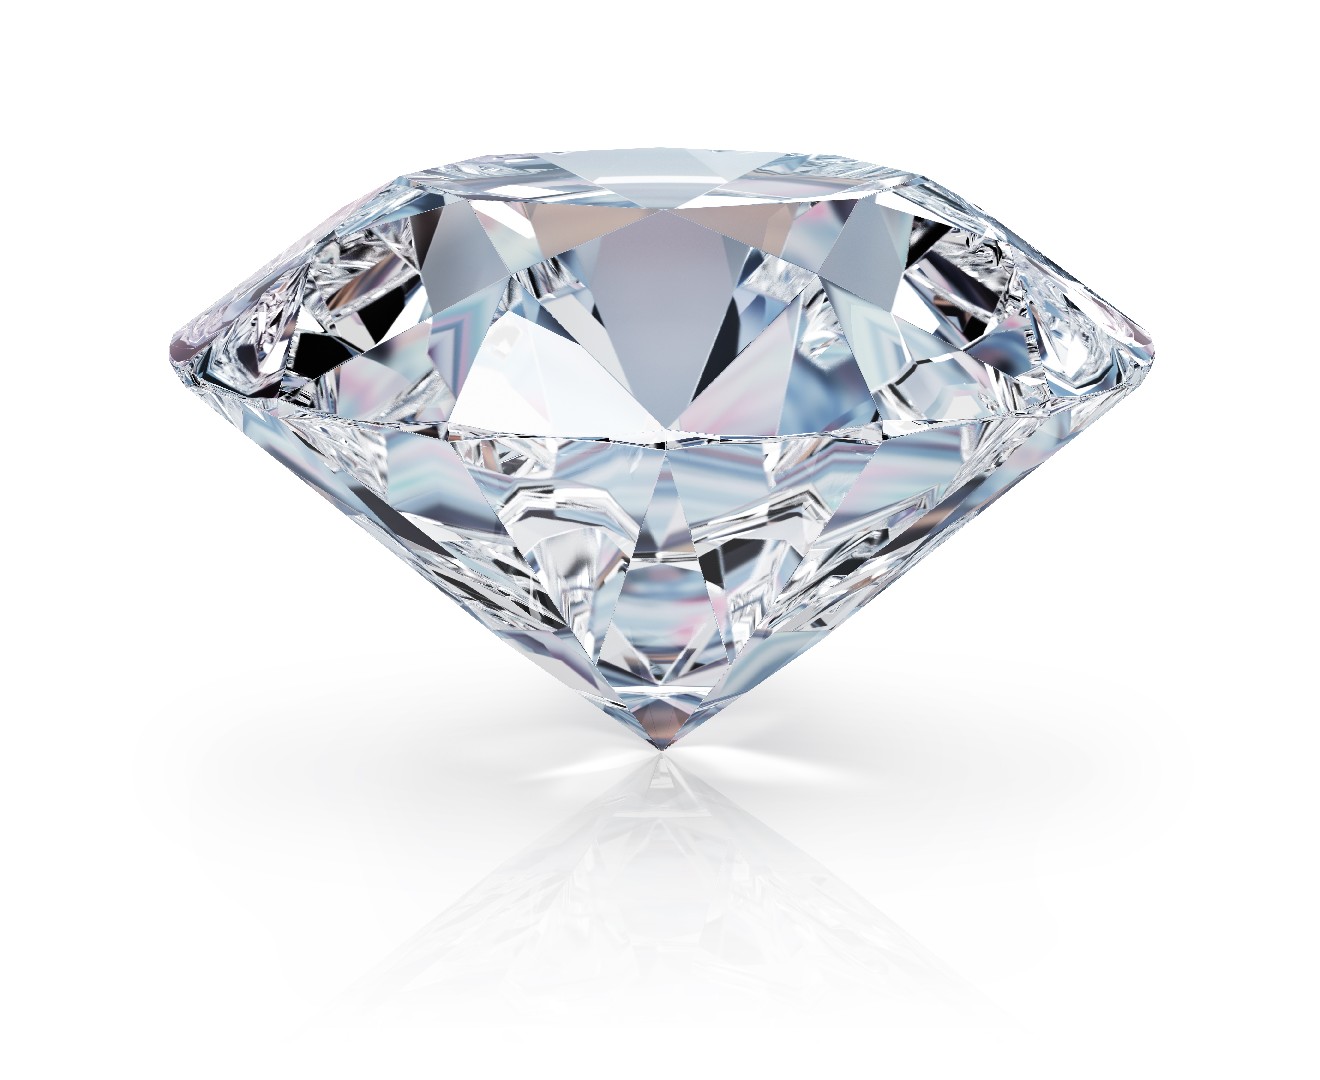 ألماس (Diamond gemstone)